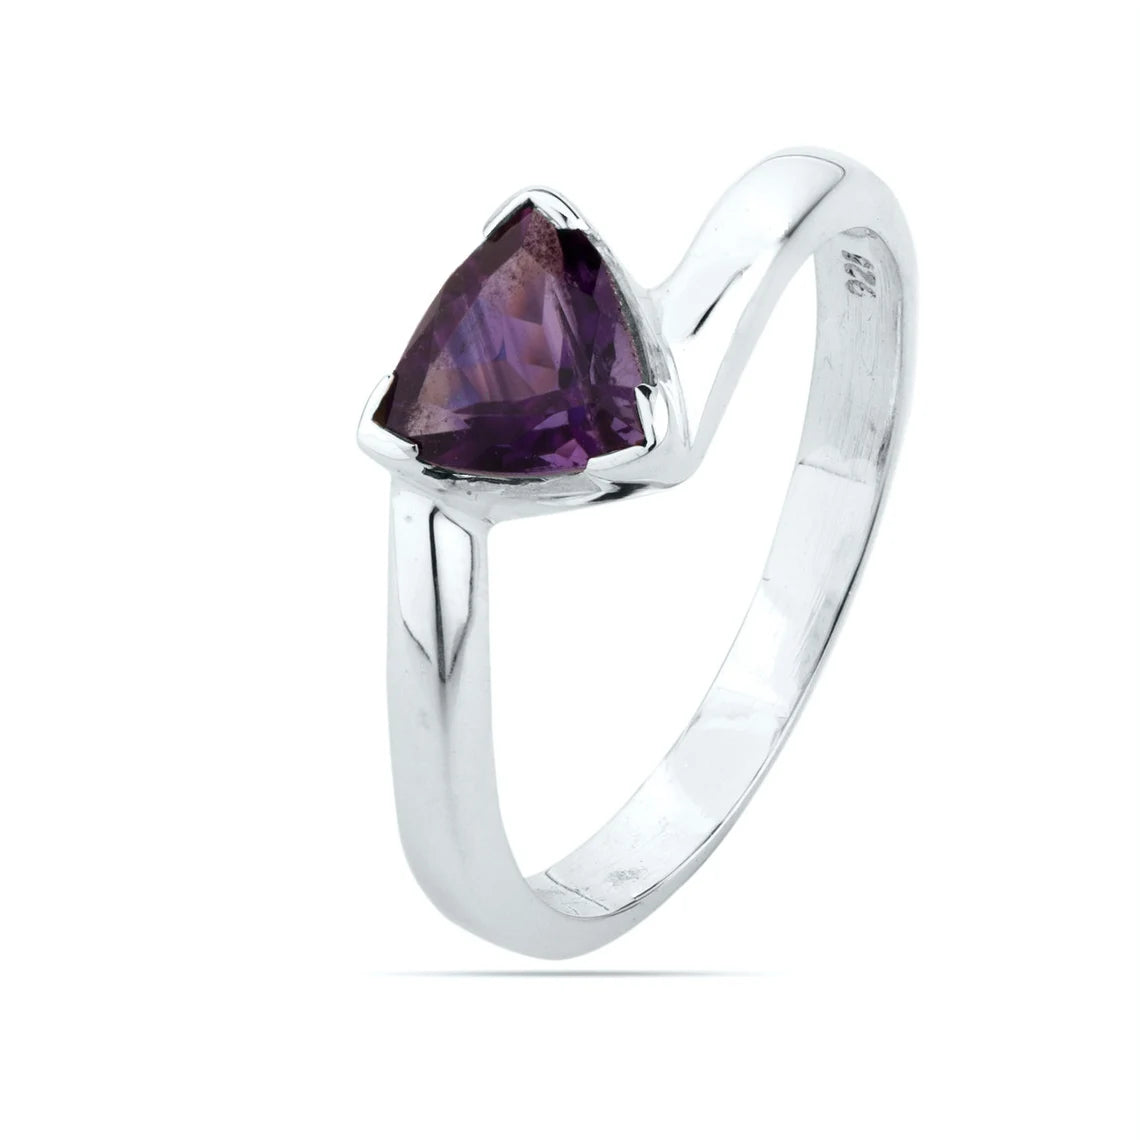 Amethyst Ring- Amethyst Gemstone Ring- February Birthstone Ring- Trillion Cut Amethyst Ring - 925 sterling silver